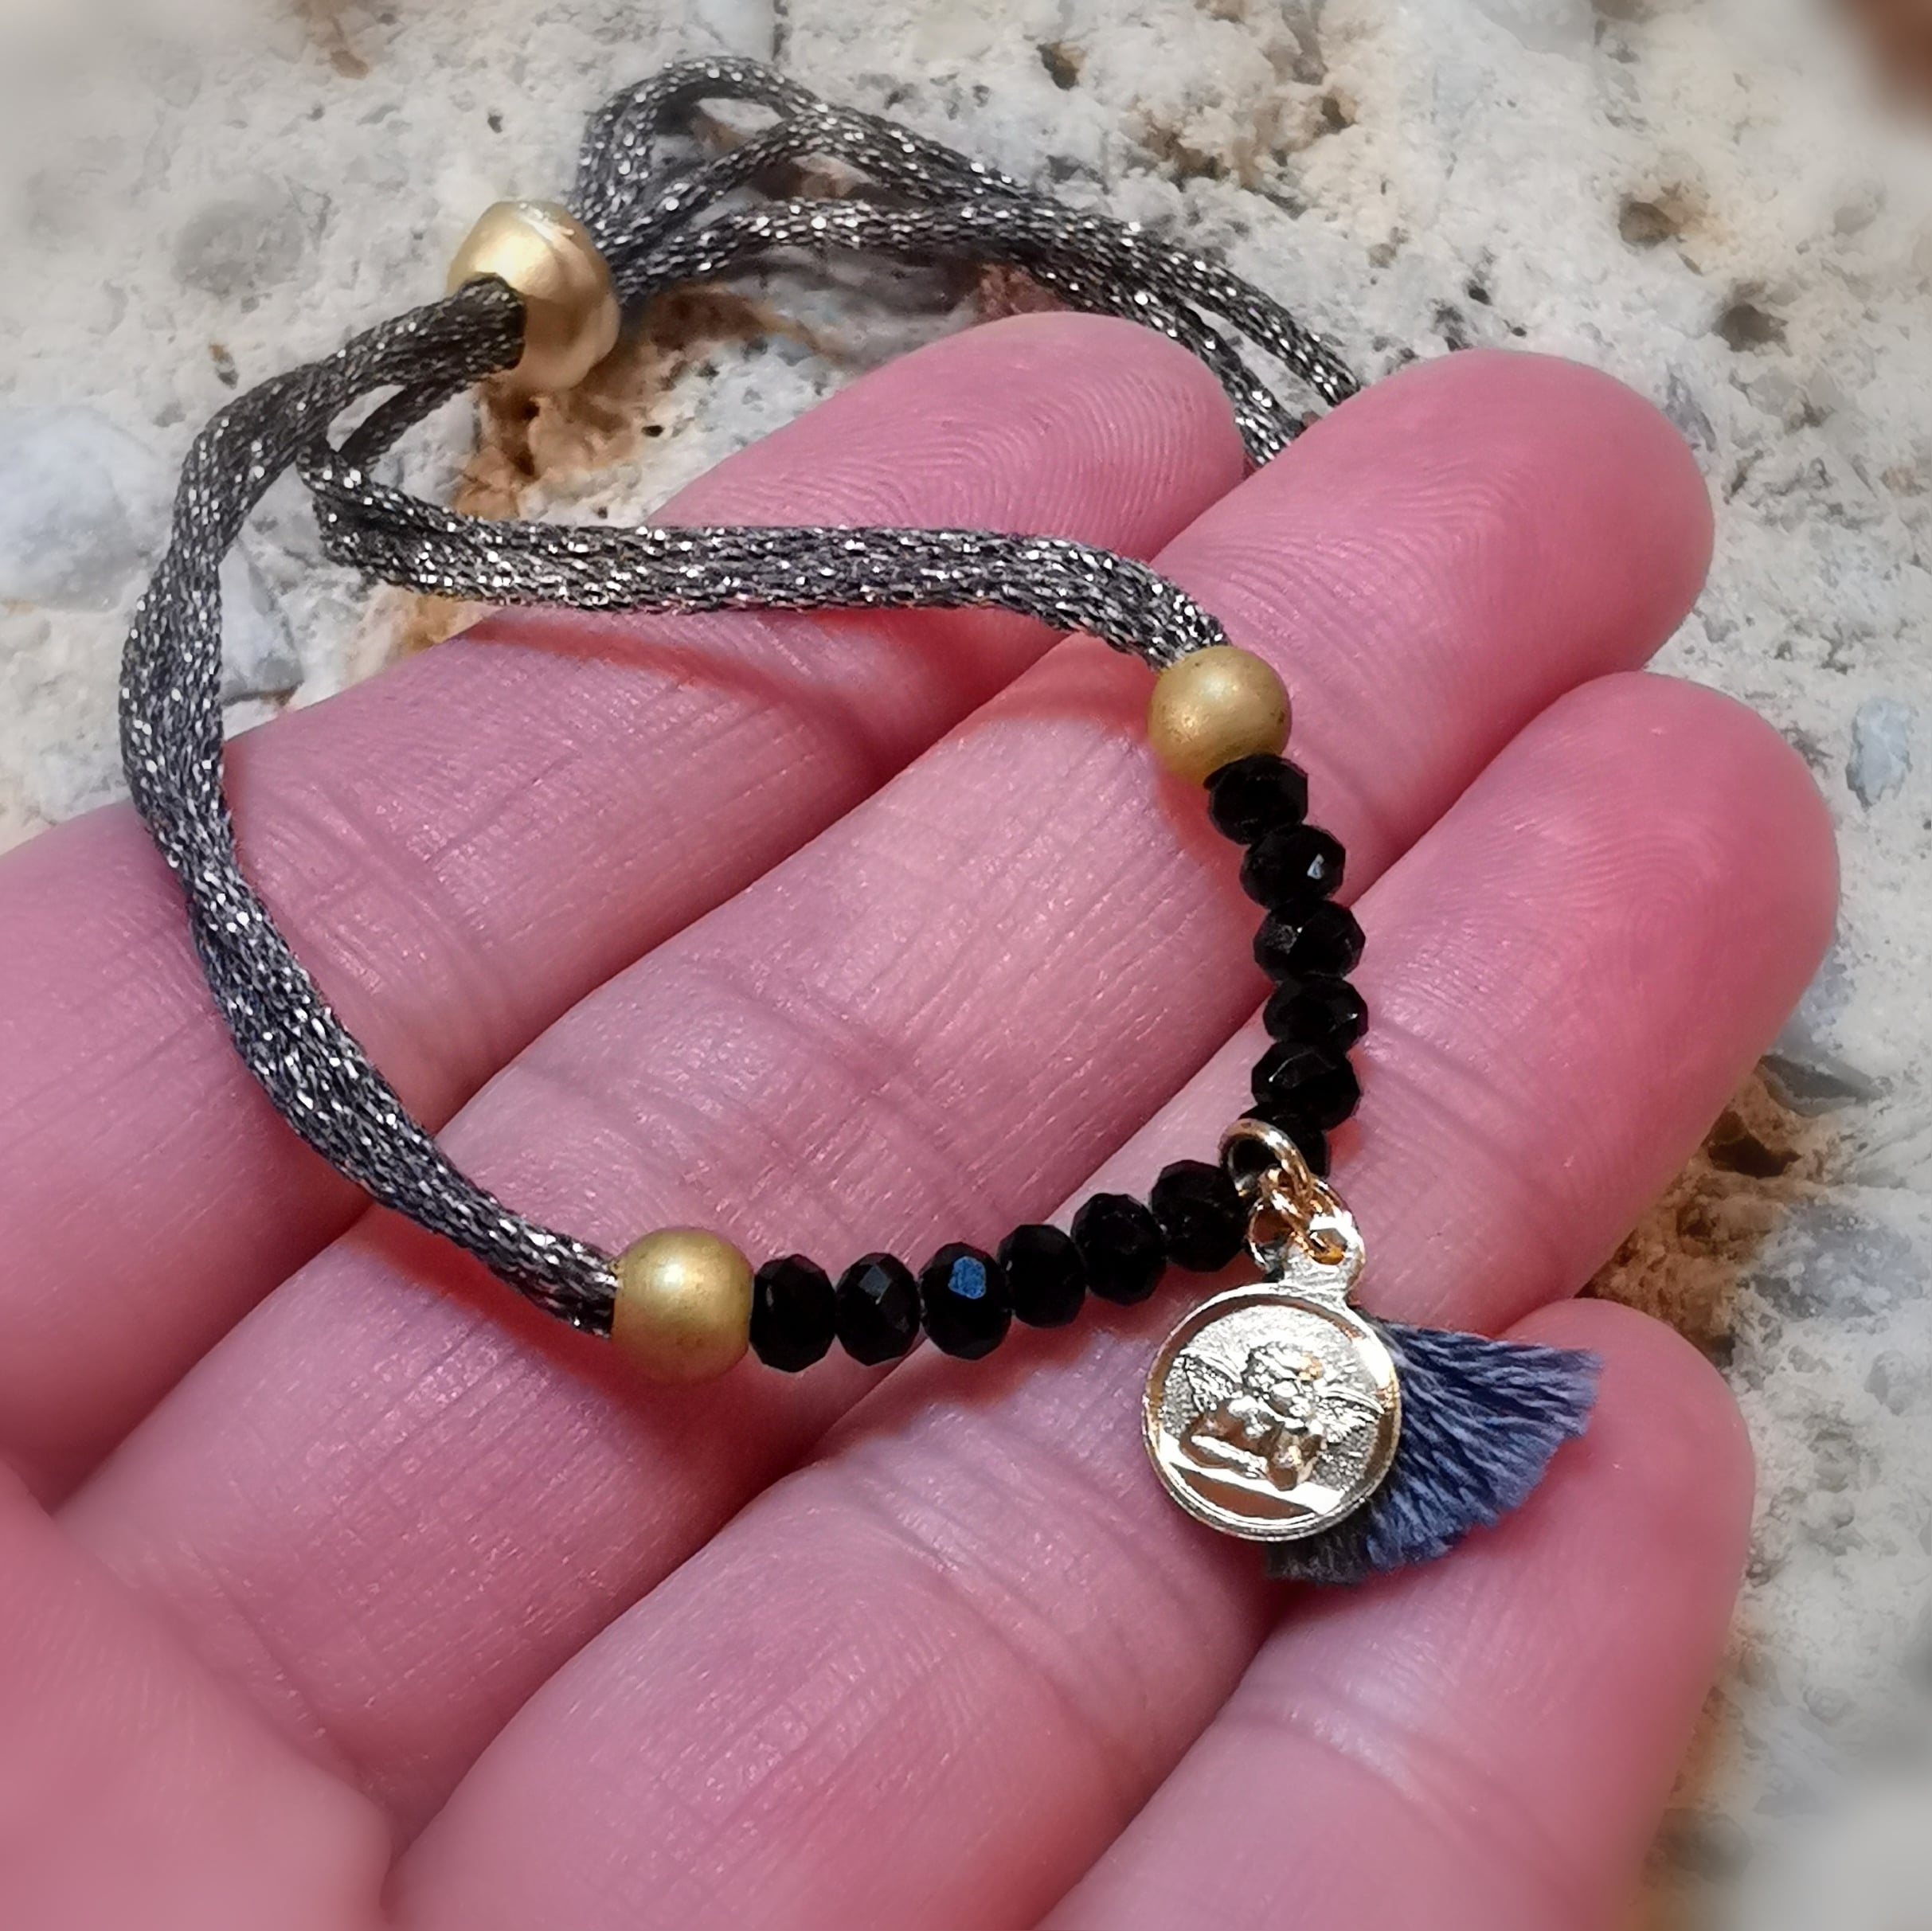 Engel Schutz Karma Armband mit Meditations Karte, Wunder, geweiht, Amulett und Quaste vergoldet, Armband alle grössen